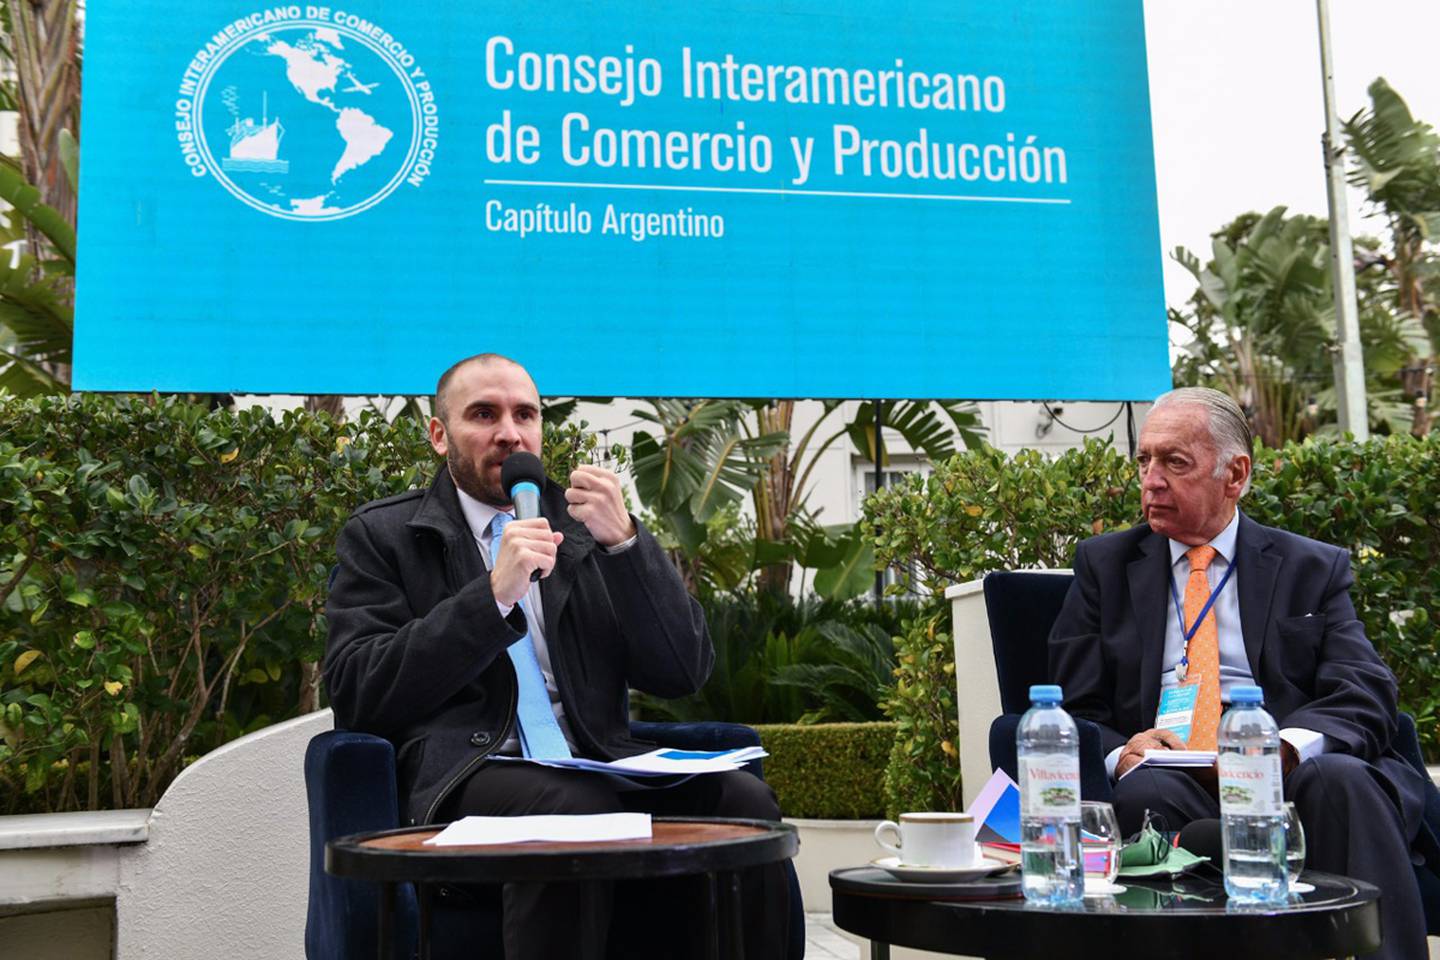 Participaron de un evento organizado por el Consejo Interamericano de Comercio y Producción (CICyP)dfd